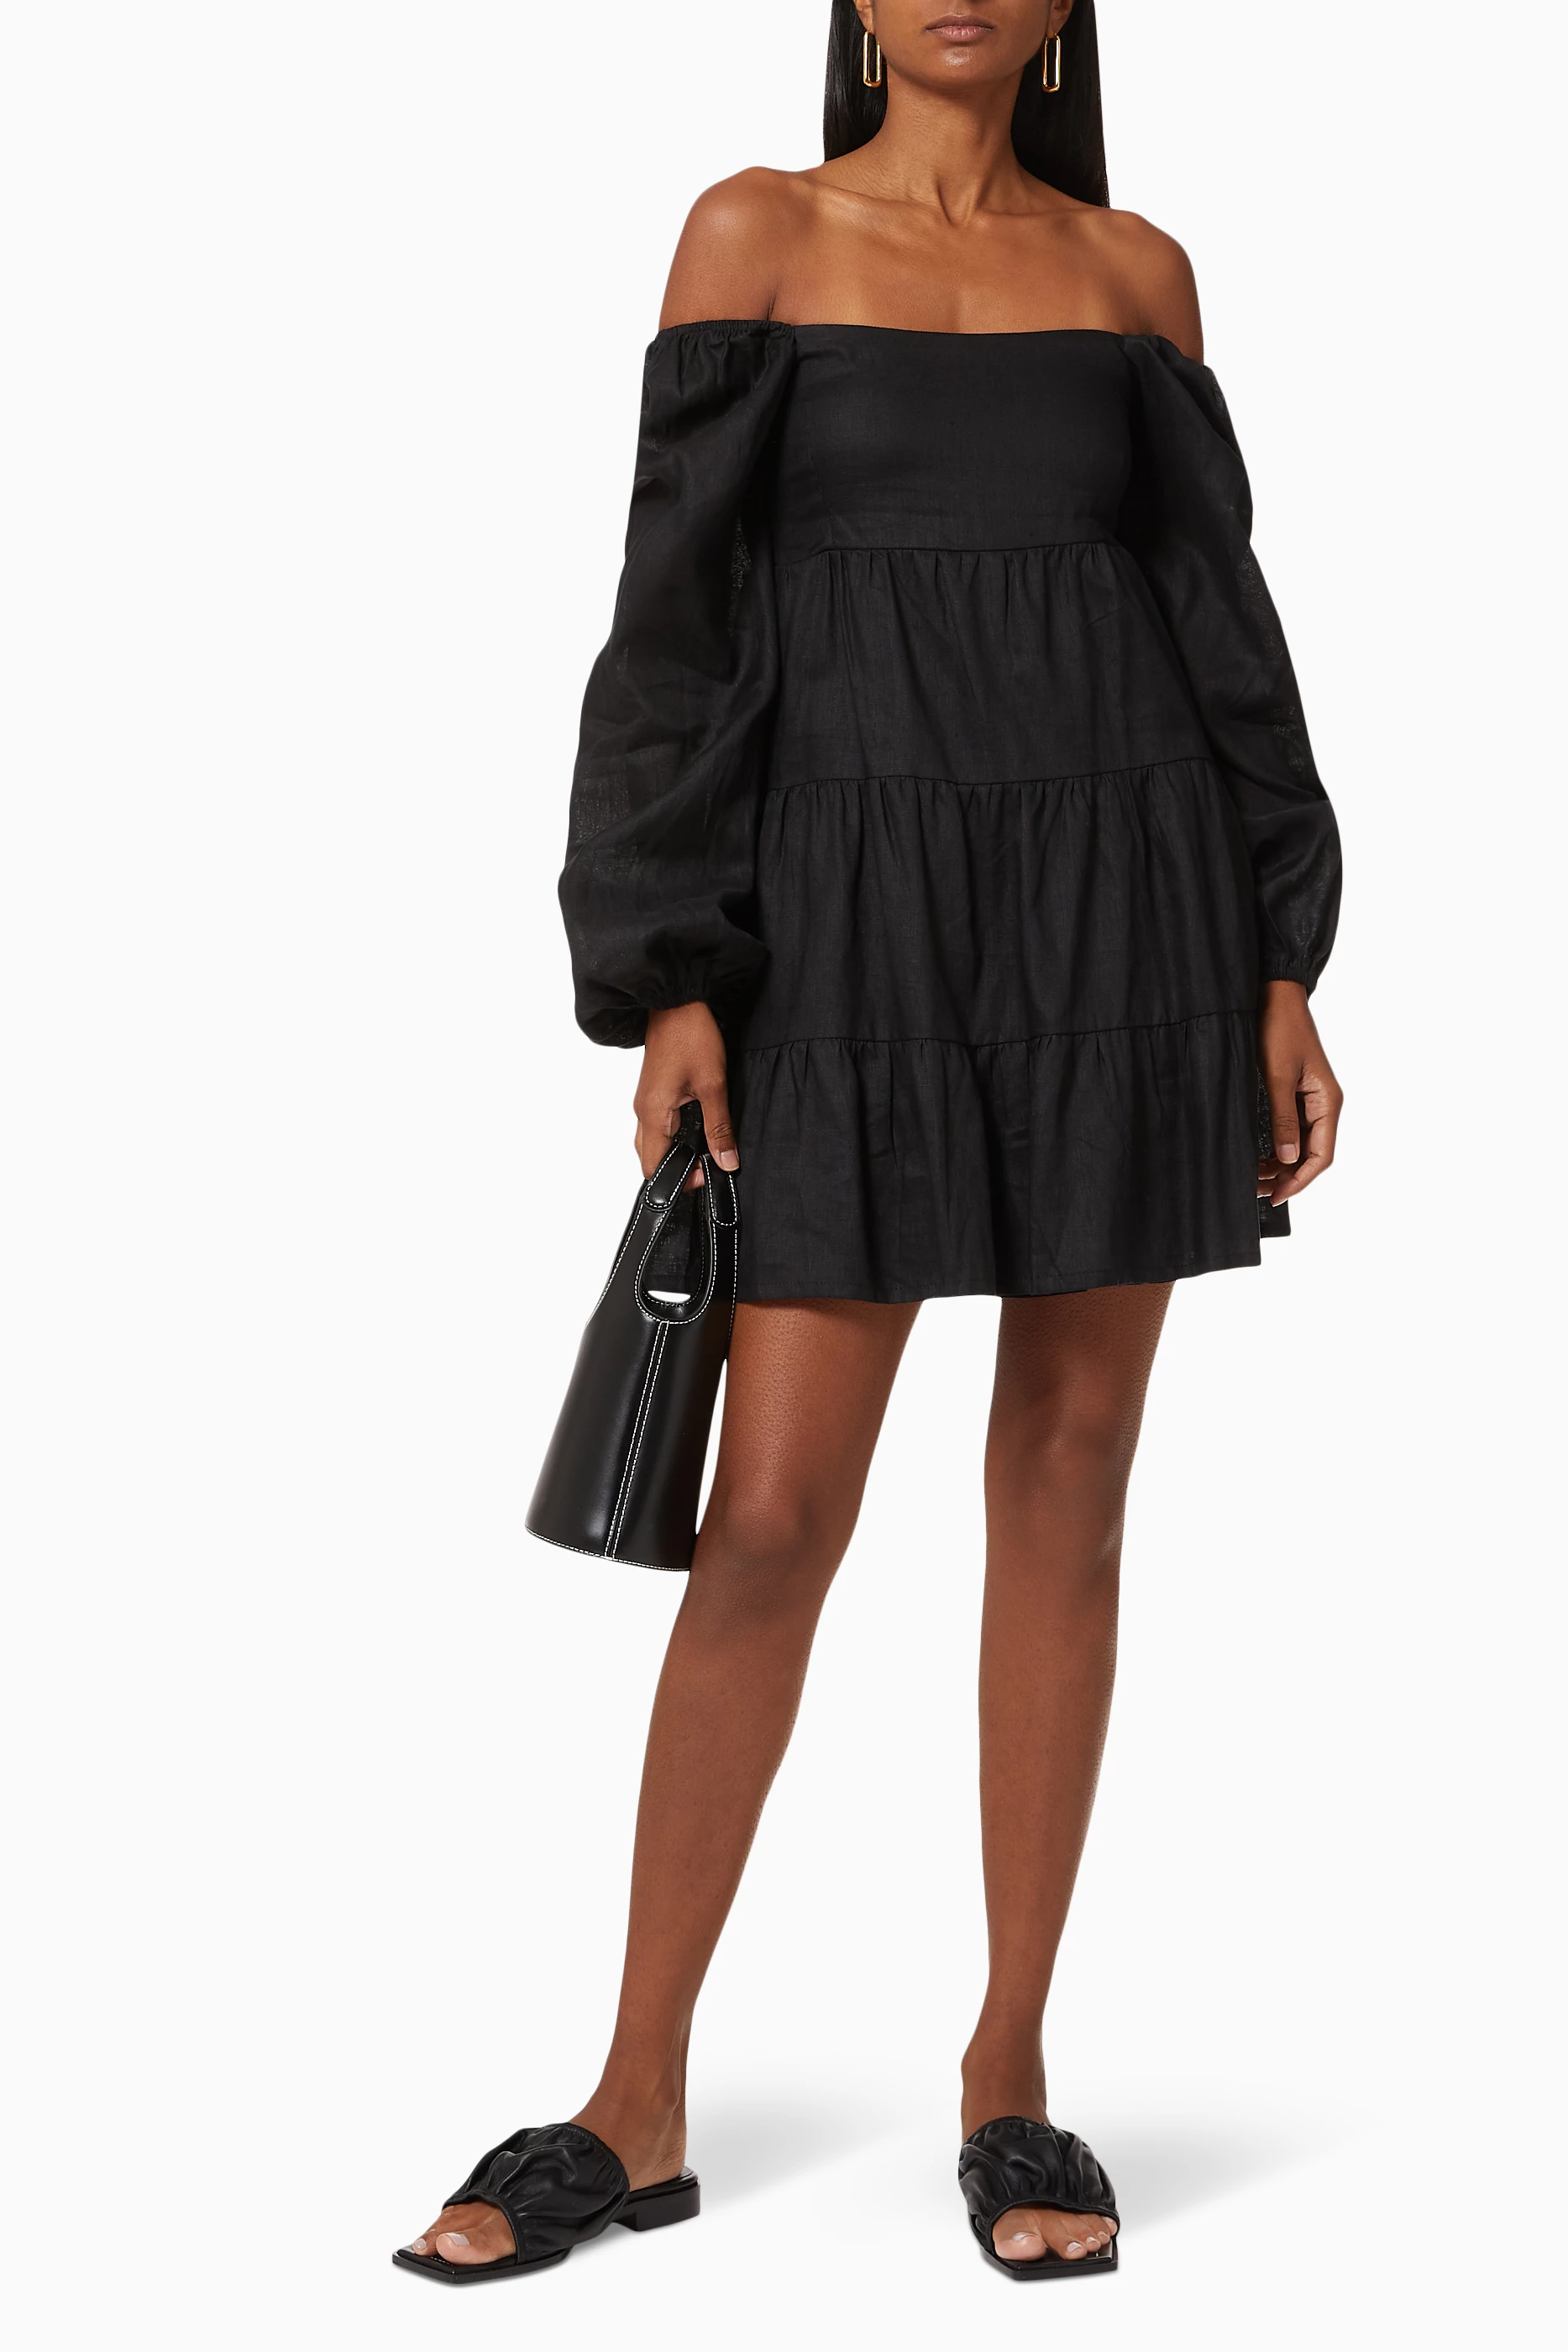 Buy Faithfull The Brand Black Morissa Mini Dress in Linen for Women in UAE  | Ounass